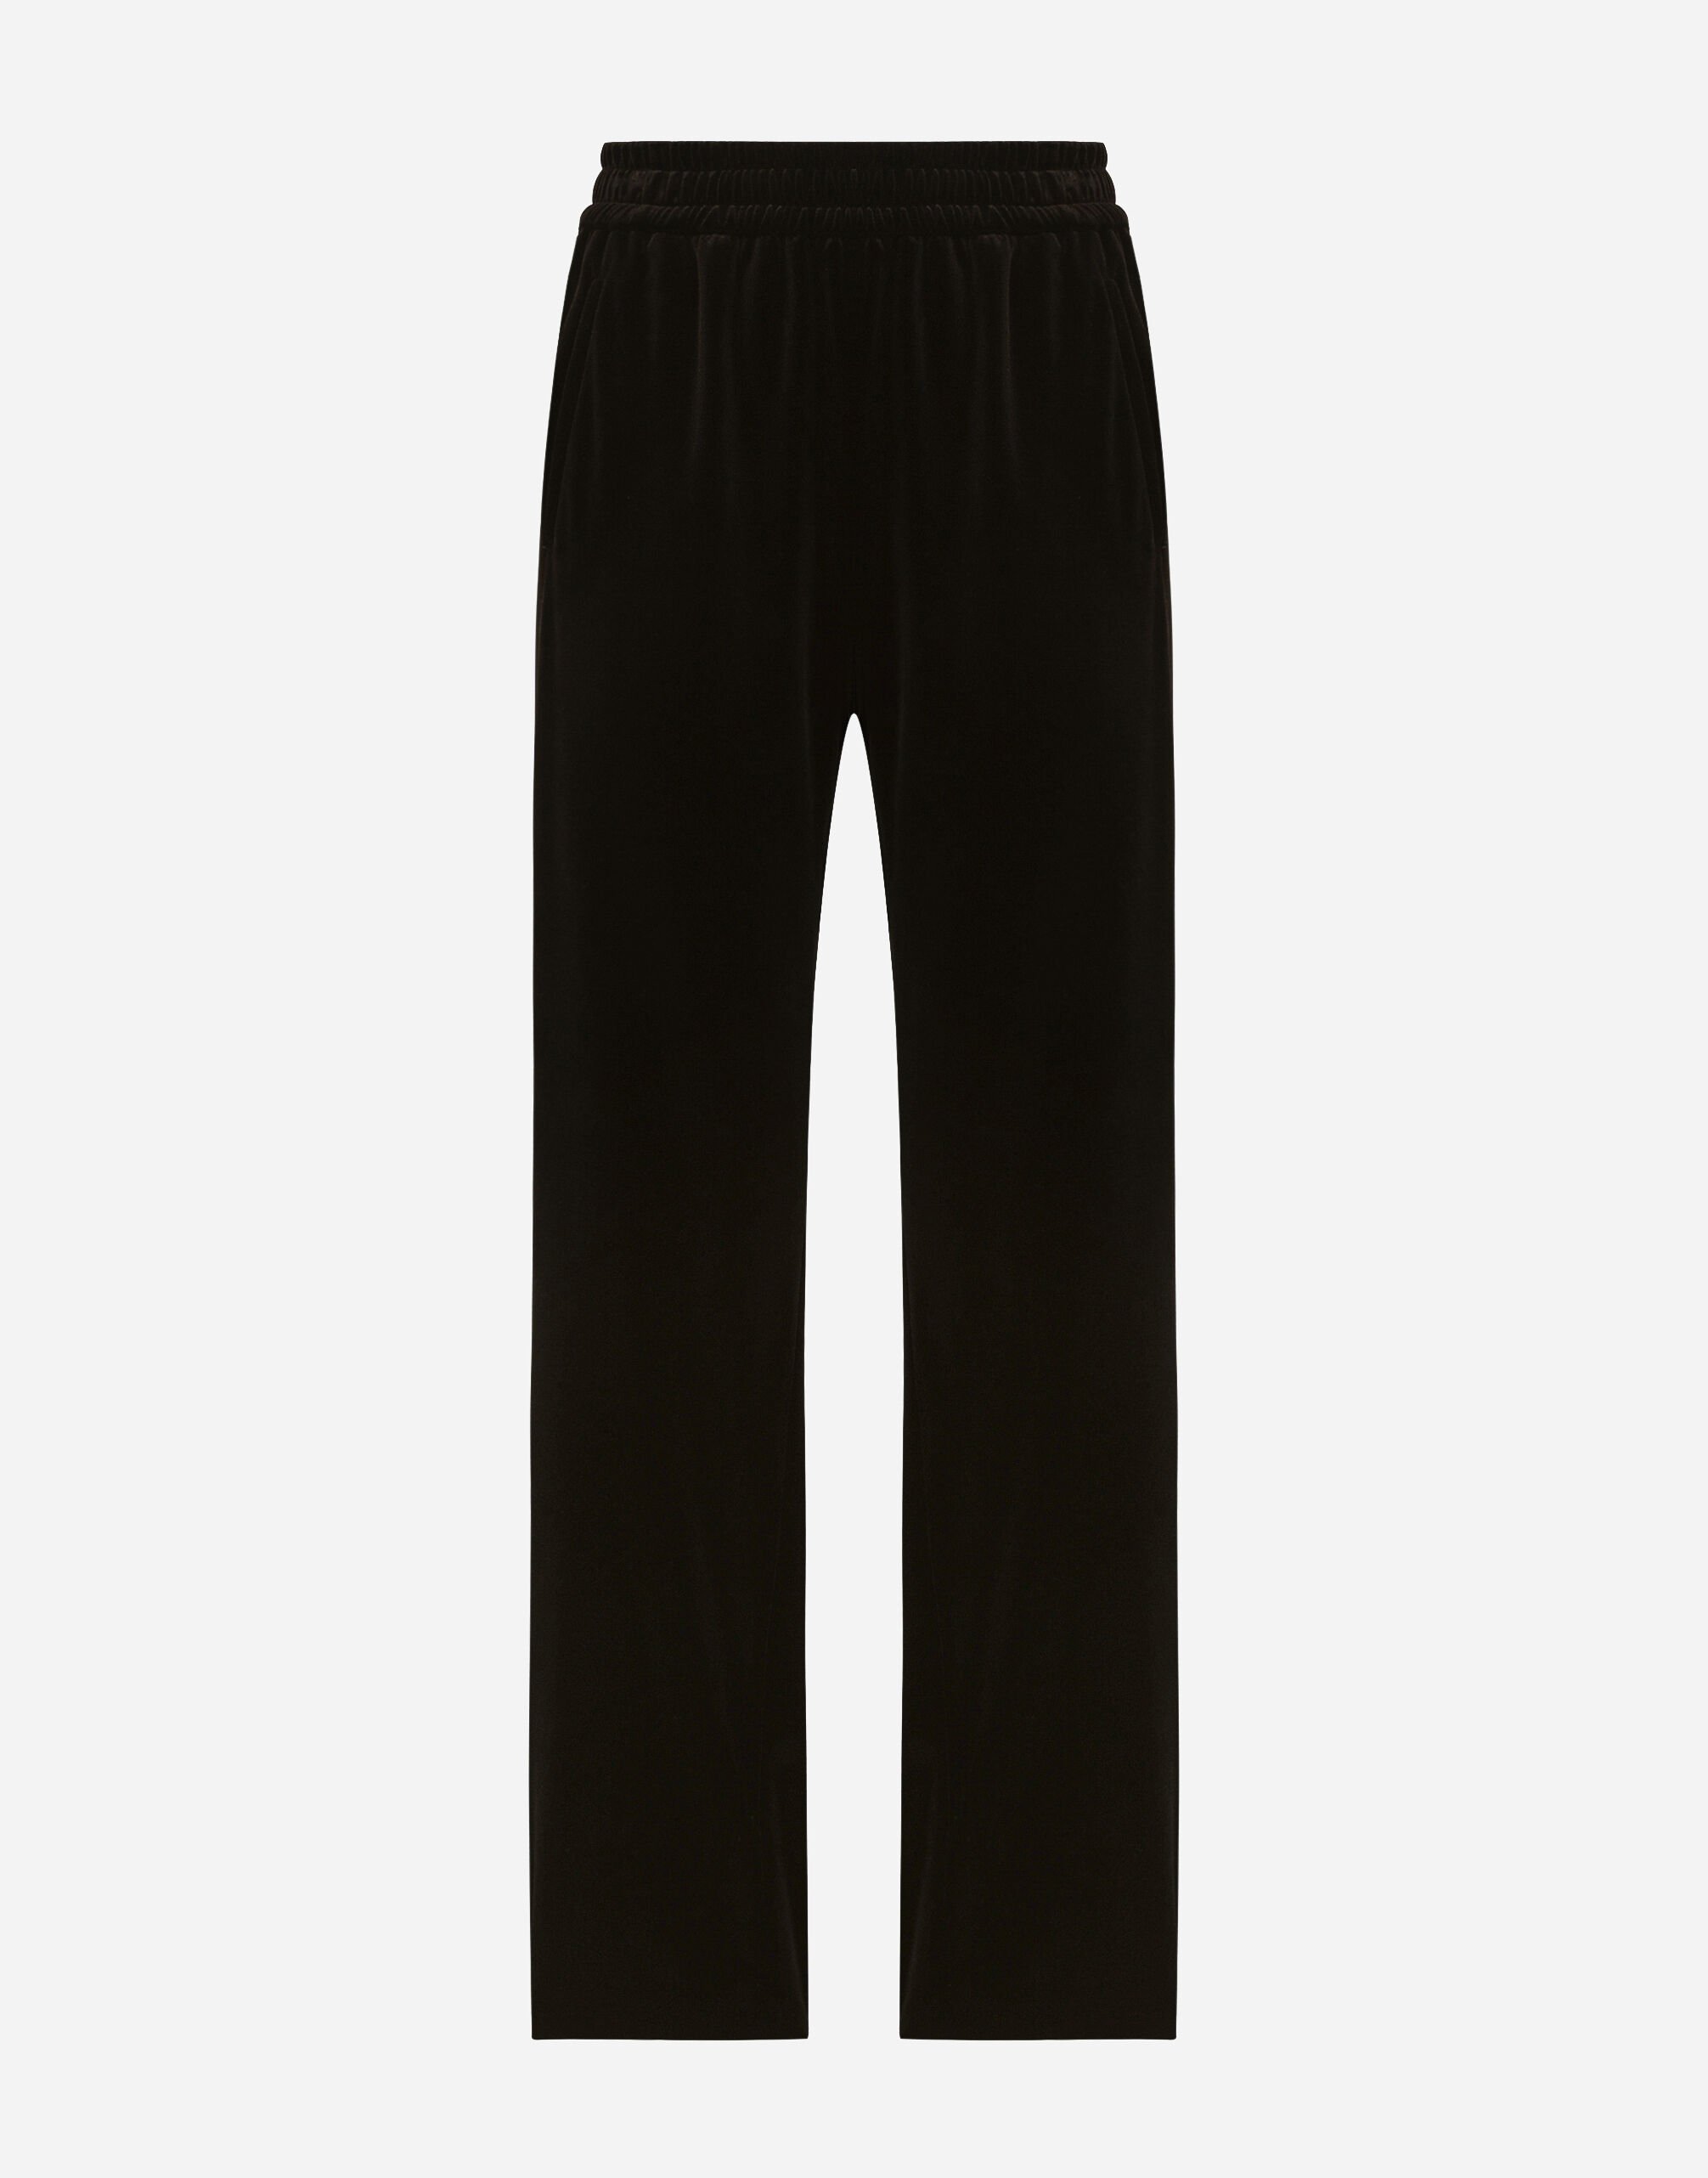 Attitude black velvet slim fit pants | Lardini